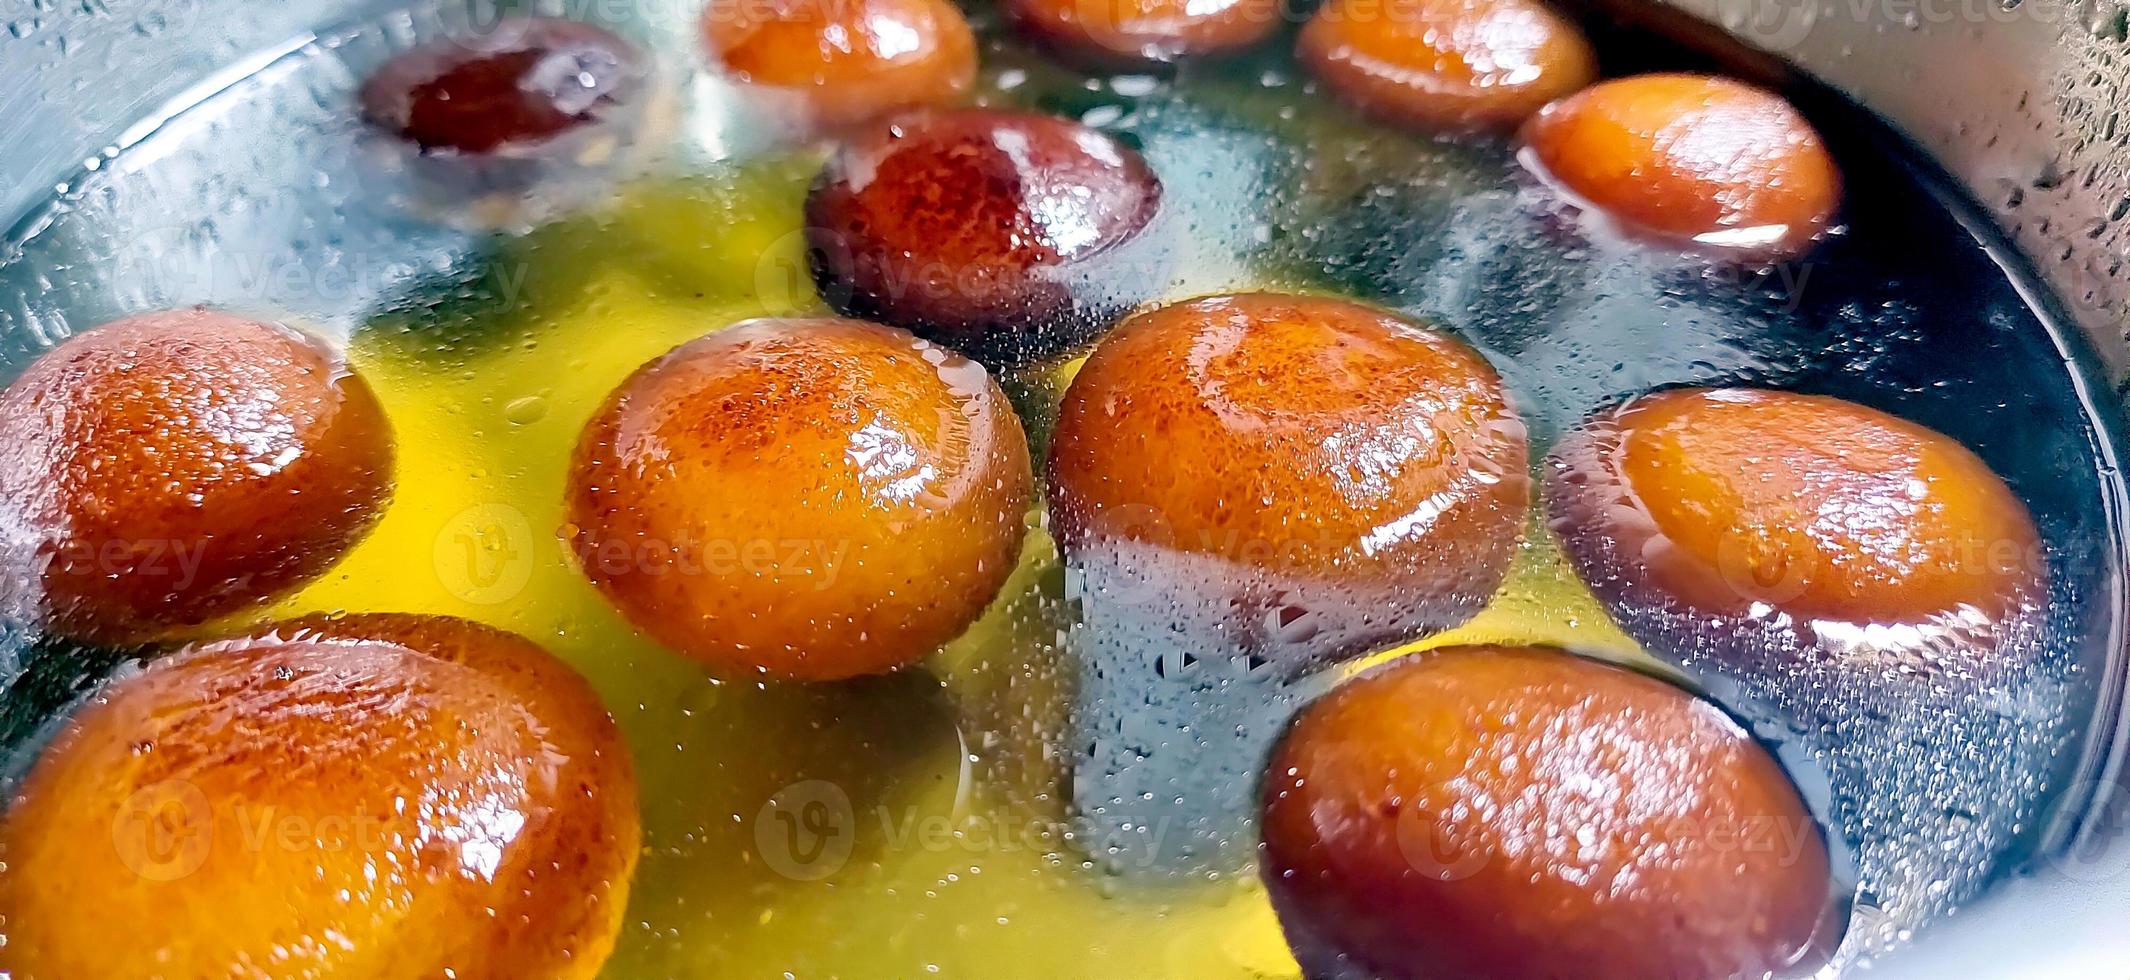 indiano doce gulab jamun é uma sobremesa xaroposa popular na índia foto